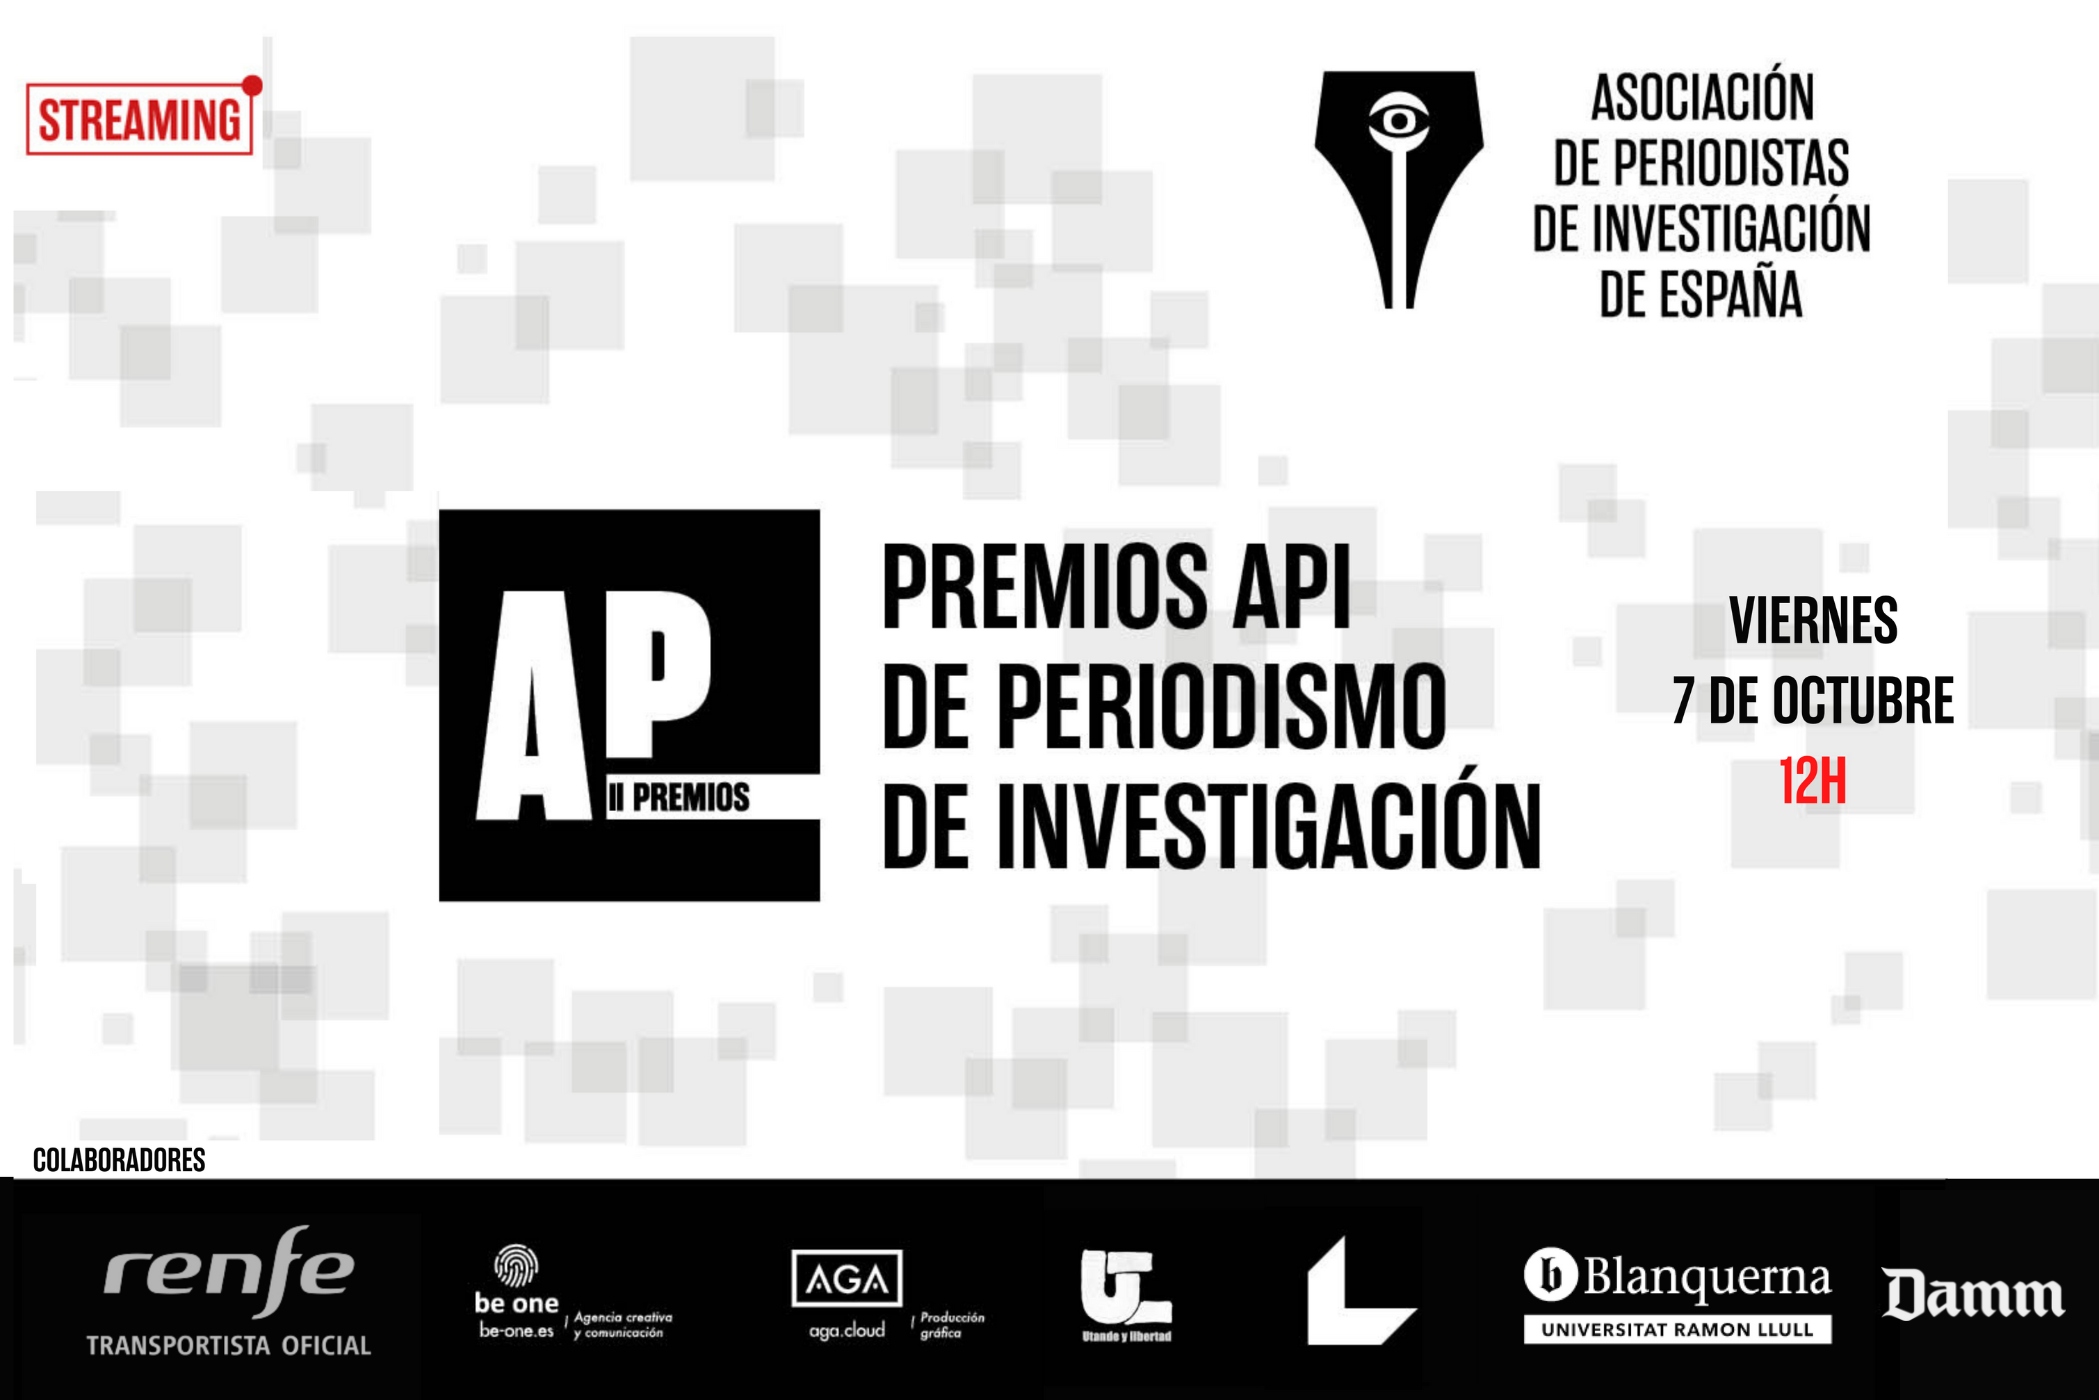 La API entregará la segunda edición de sus premios el 7 de octubre en Barcelona